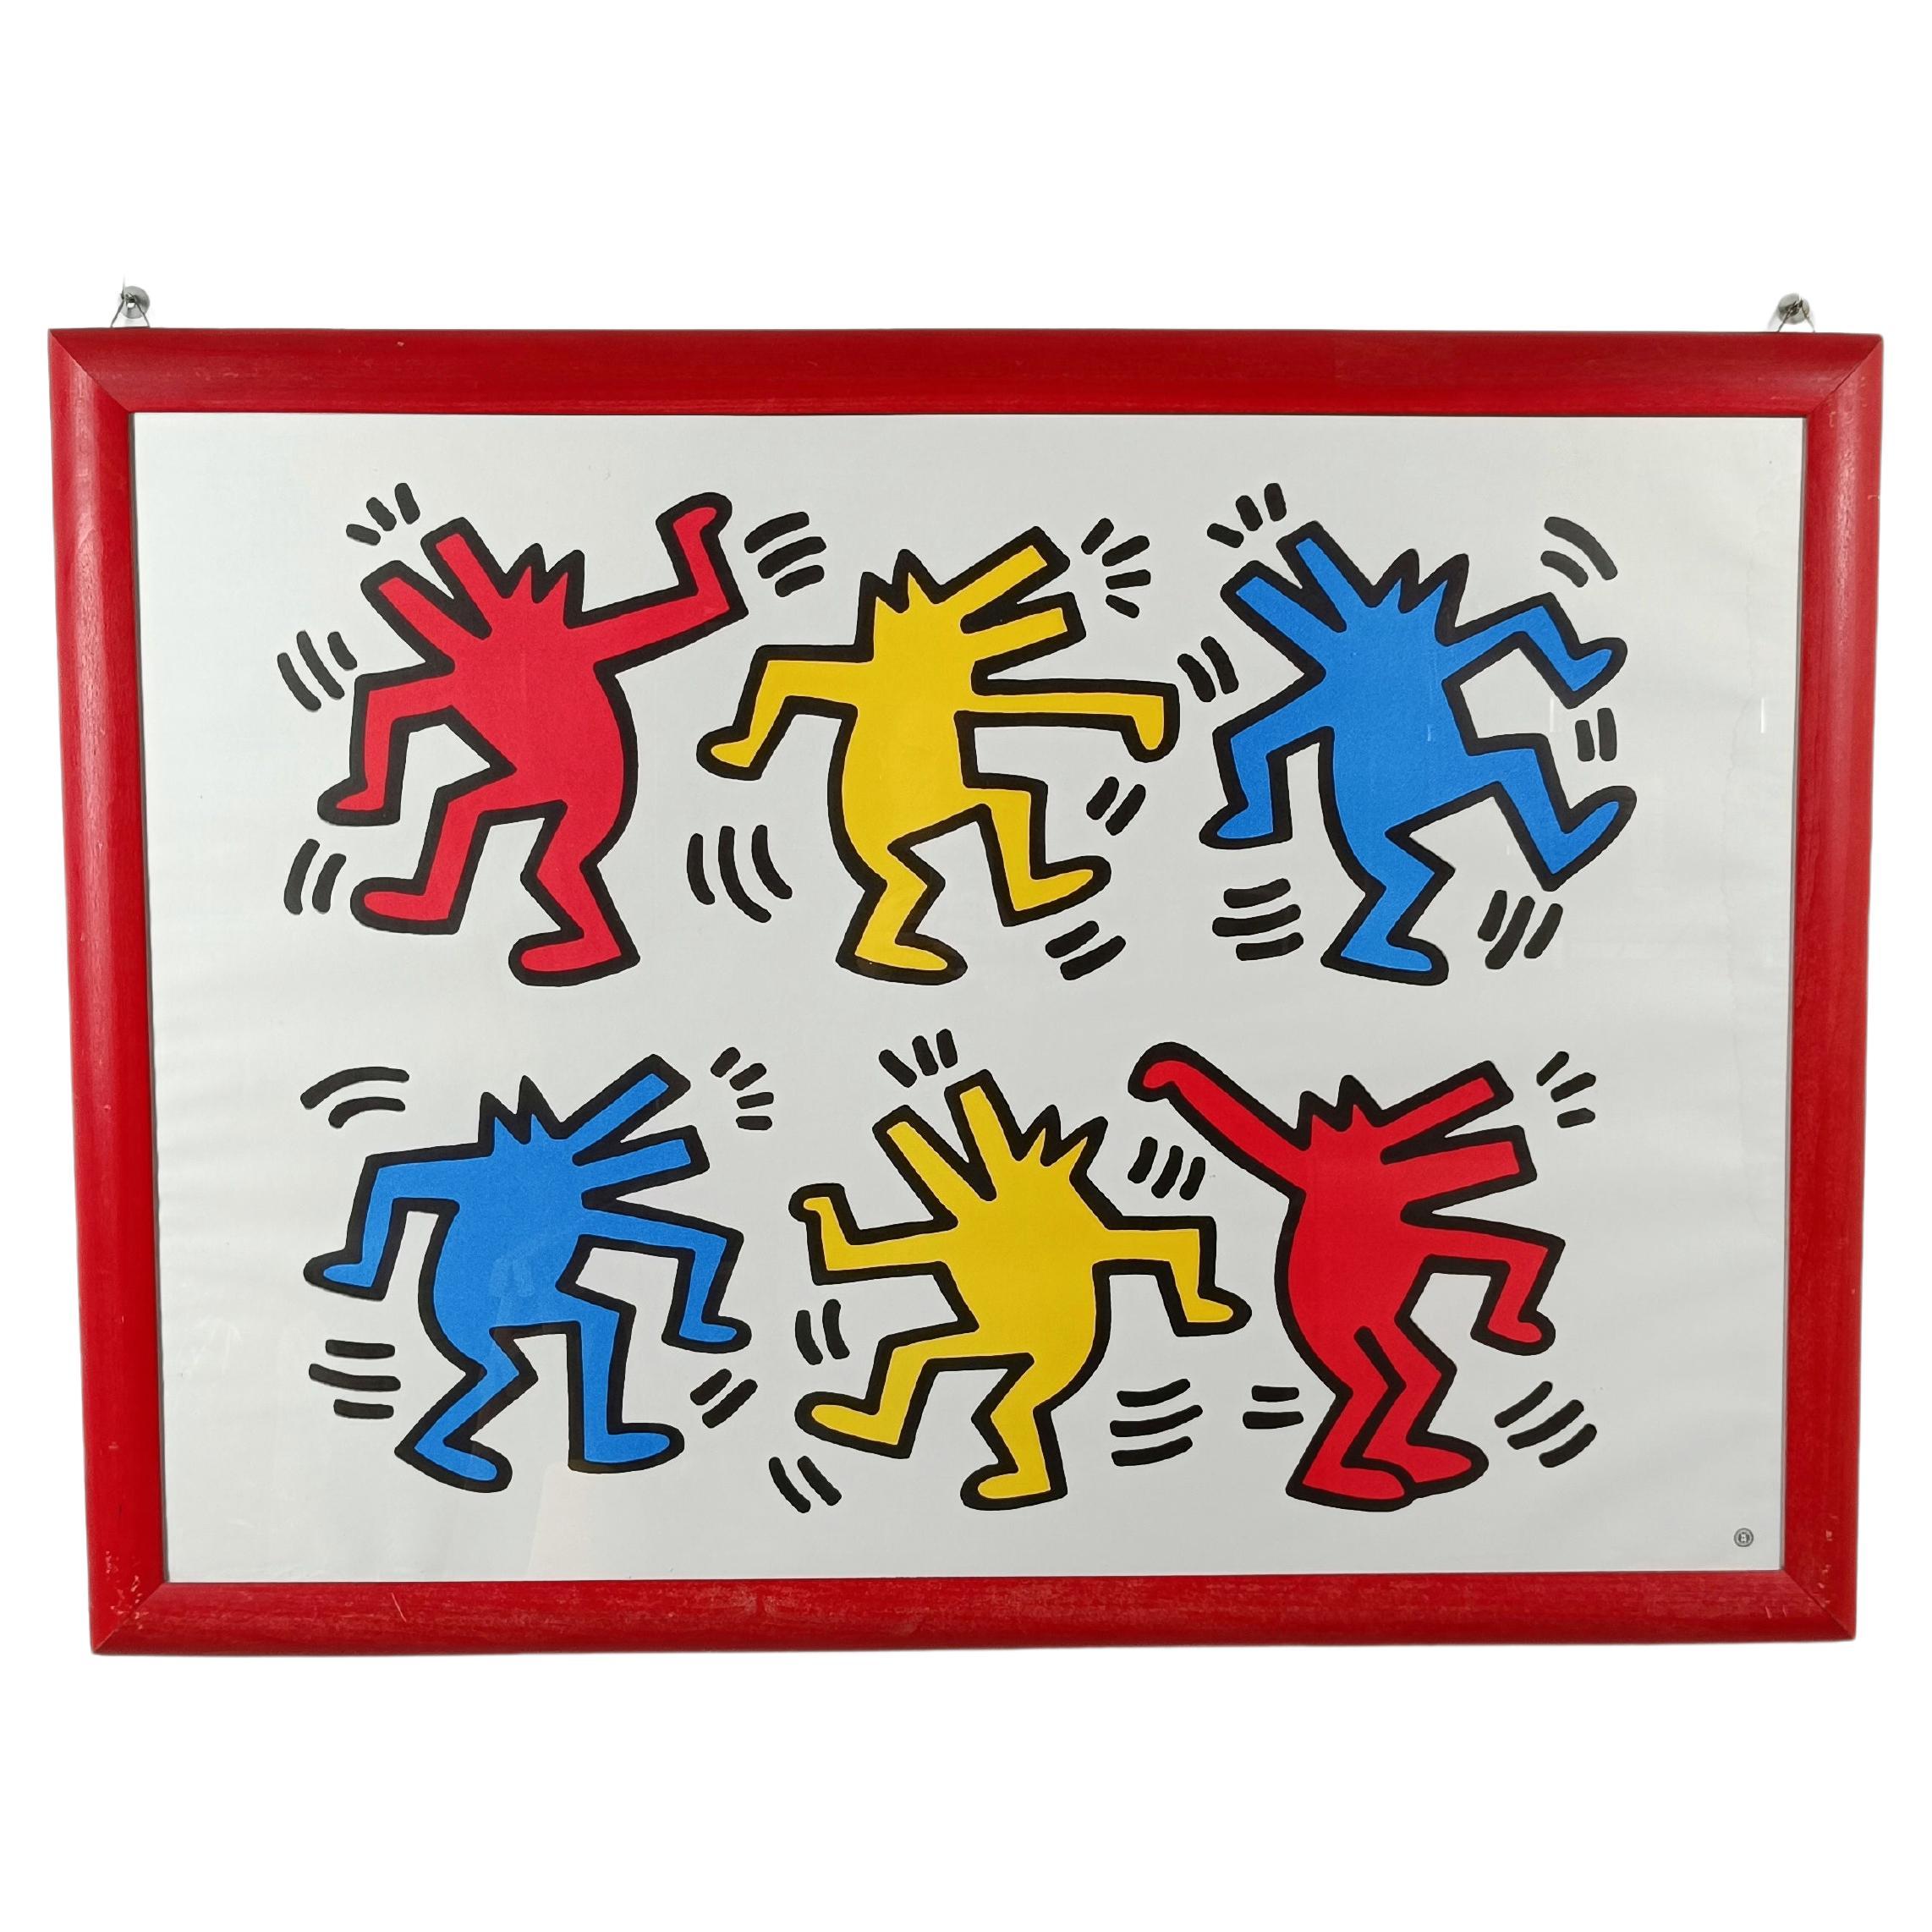 Affiche de Keith Haring représentant des chiens dansant imprimée en France par Nouvelles Imeges S.A. 